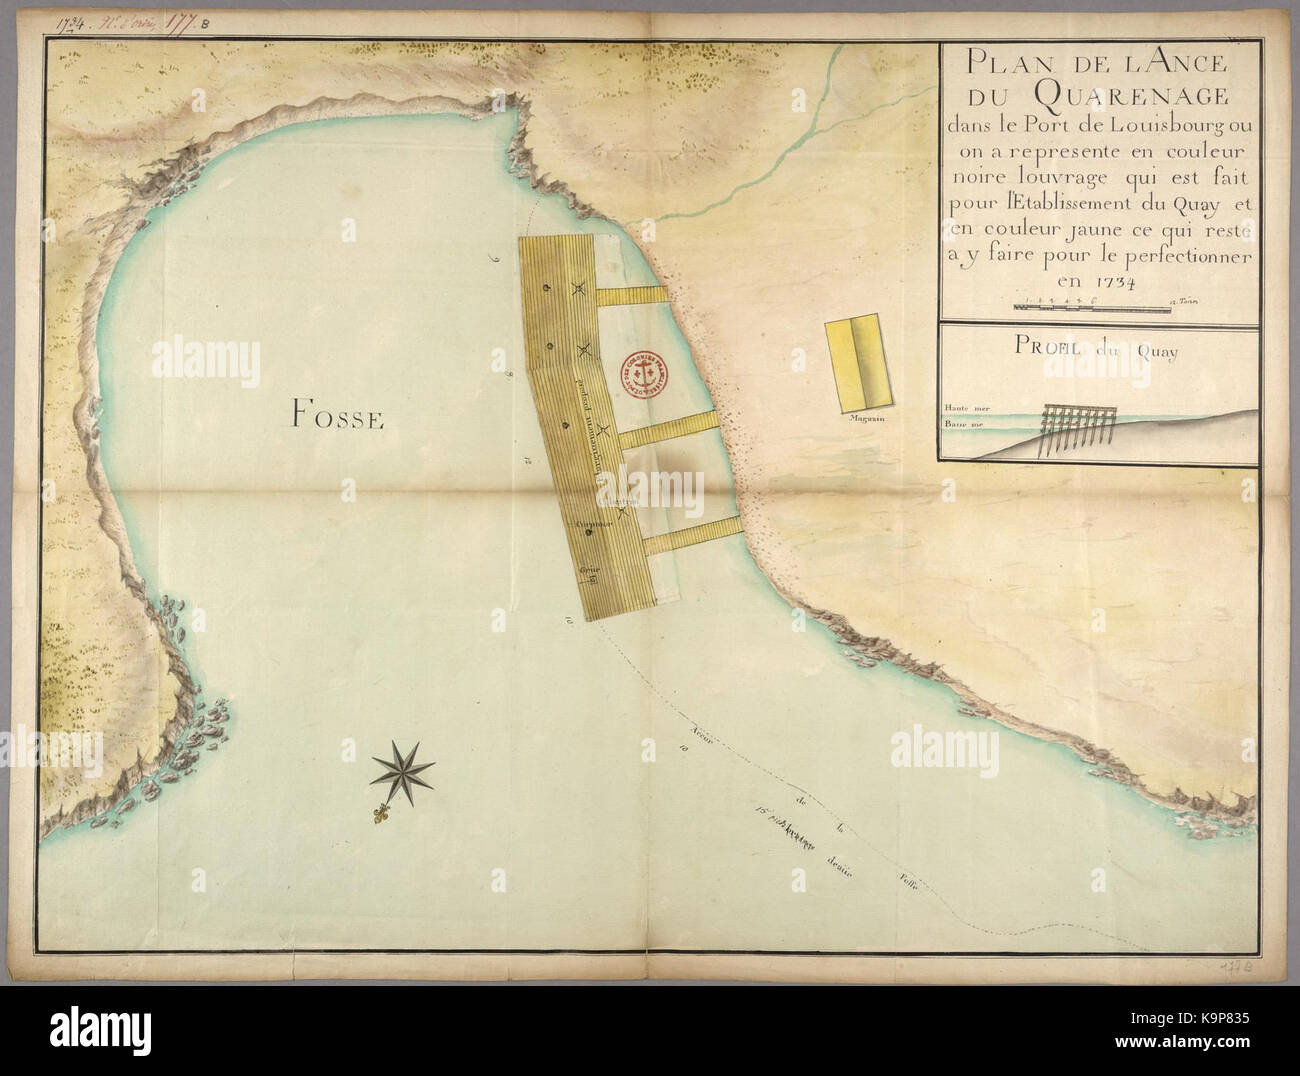 Plan de l'Ance du Quarenage dans le port de Louisbourg ou sur un represente en couleur noire l ouvrage qui est fait pour l'etablissement du quai et en couleur jaune ce qui reste a y faire Banque D'Images